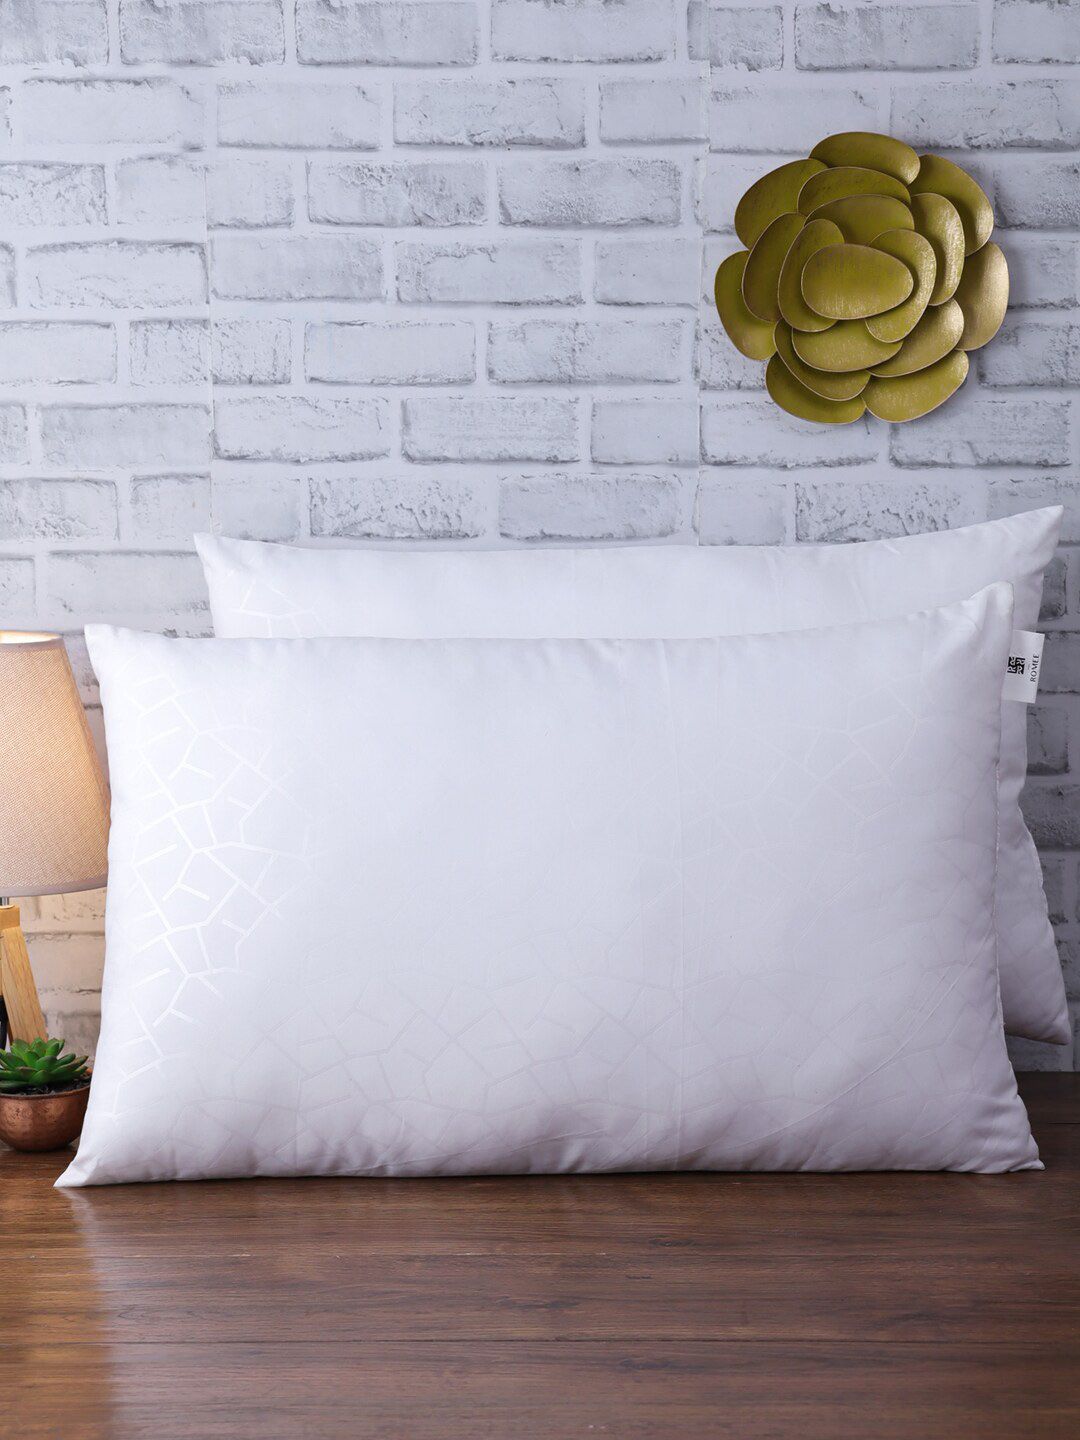 ROMEE Set of 2 White Self-Design Sleep Pillows Price in India